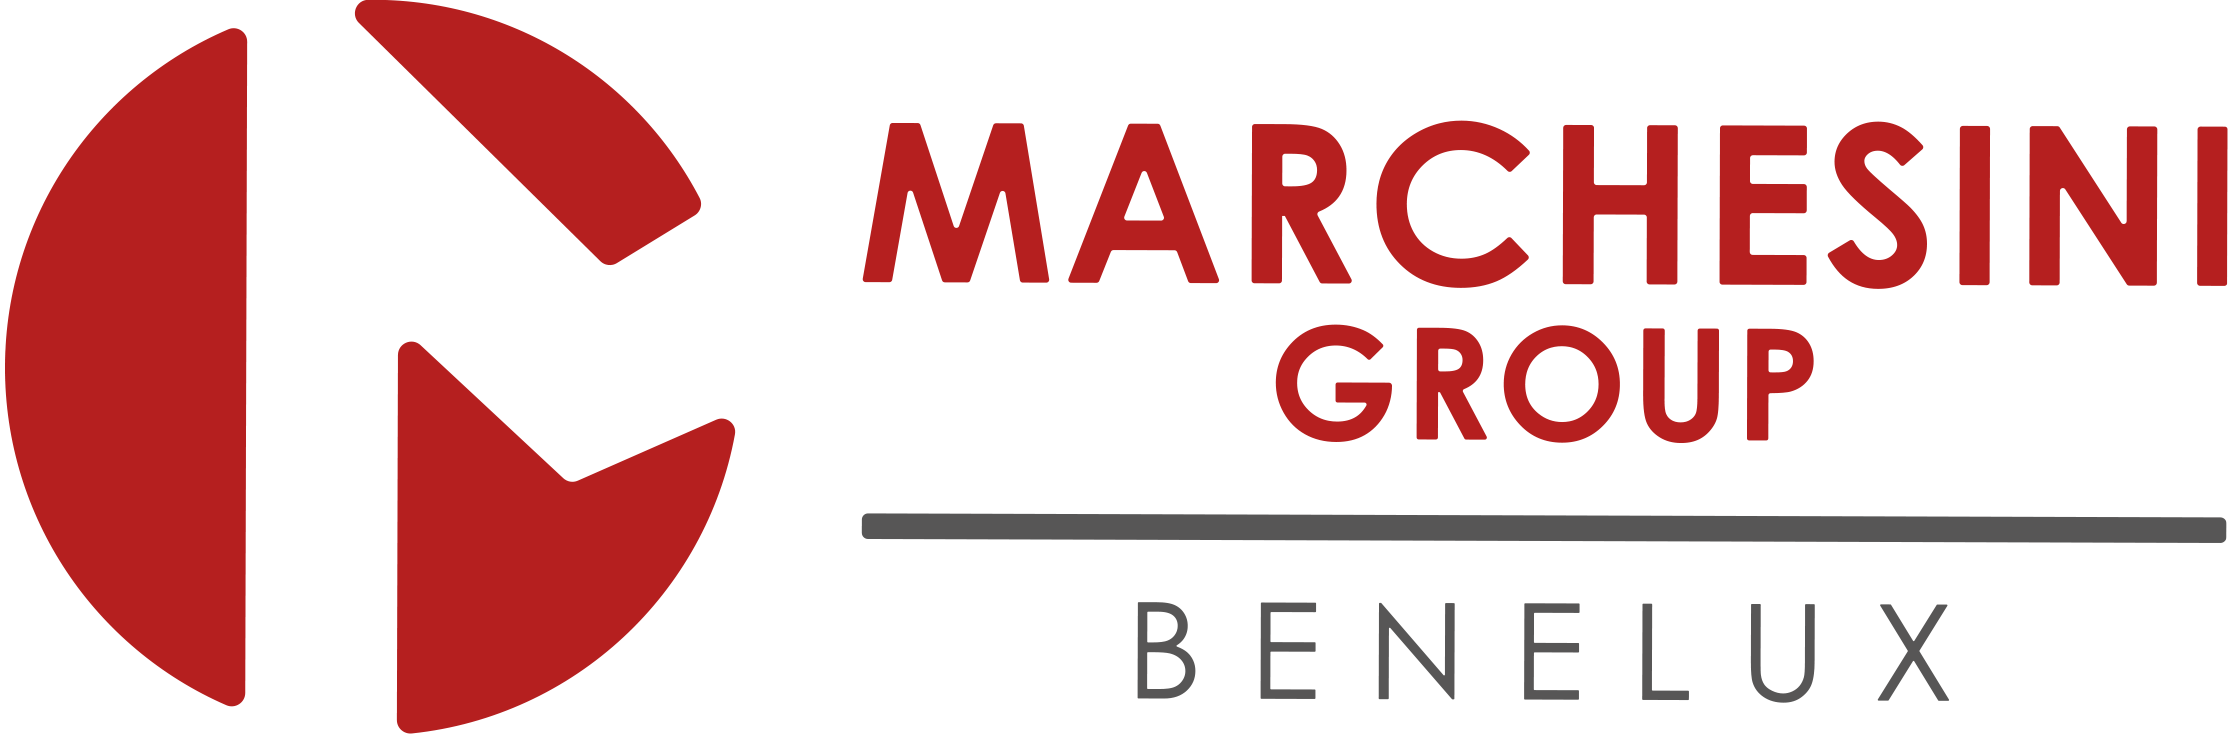 Logo-Marchesini-Group-BENELUX